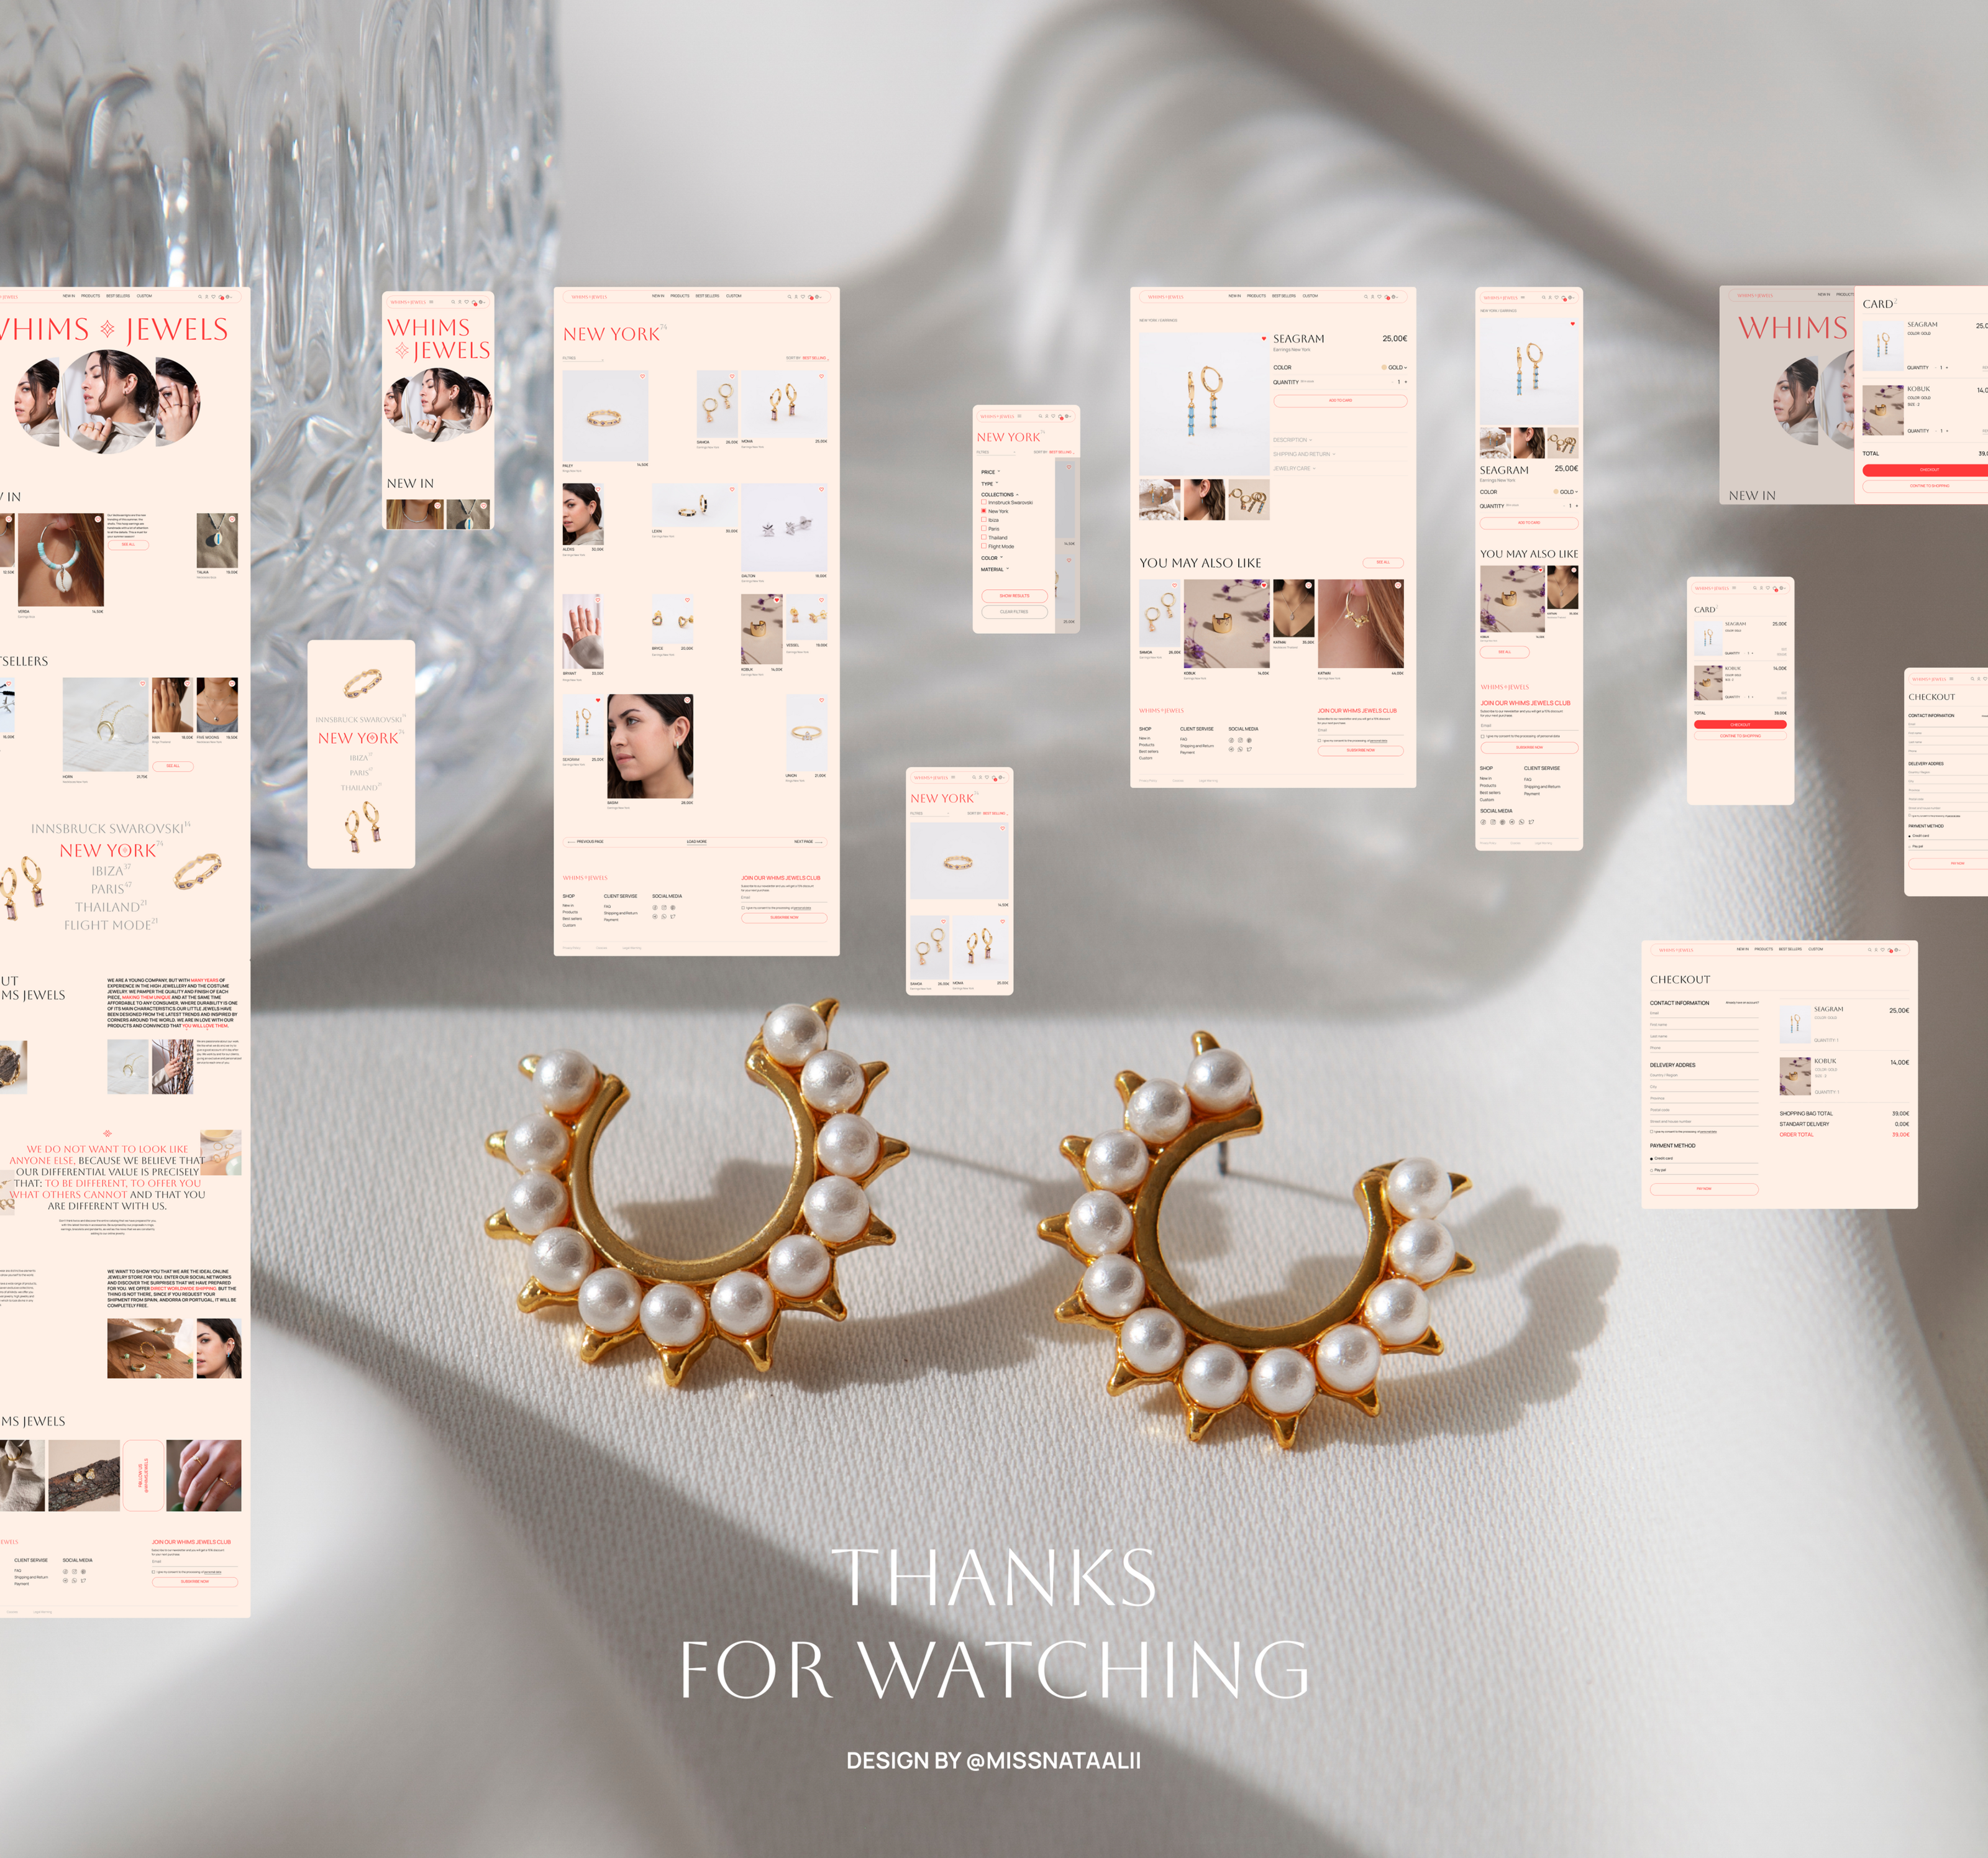 Whims Jewels | Redesign | E-commerce — Изображение №8 — Интерфейсы на Dprofile